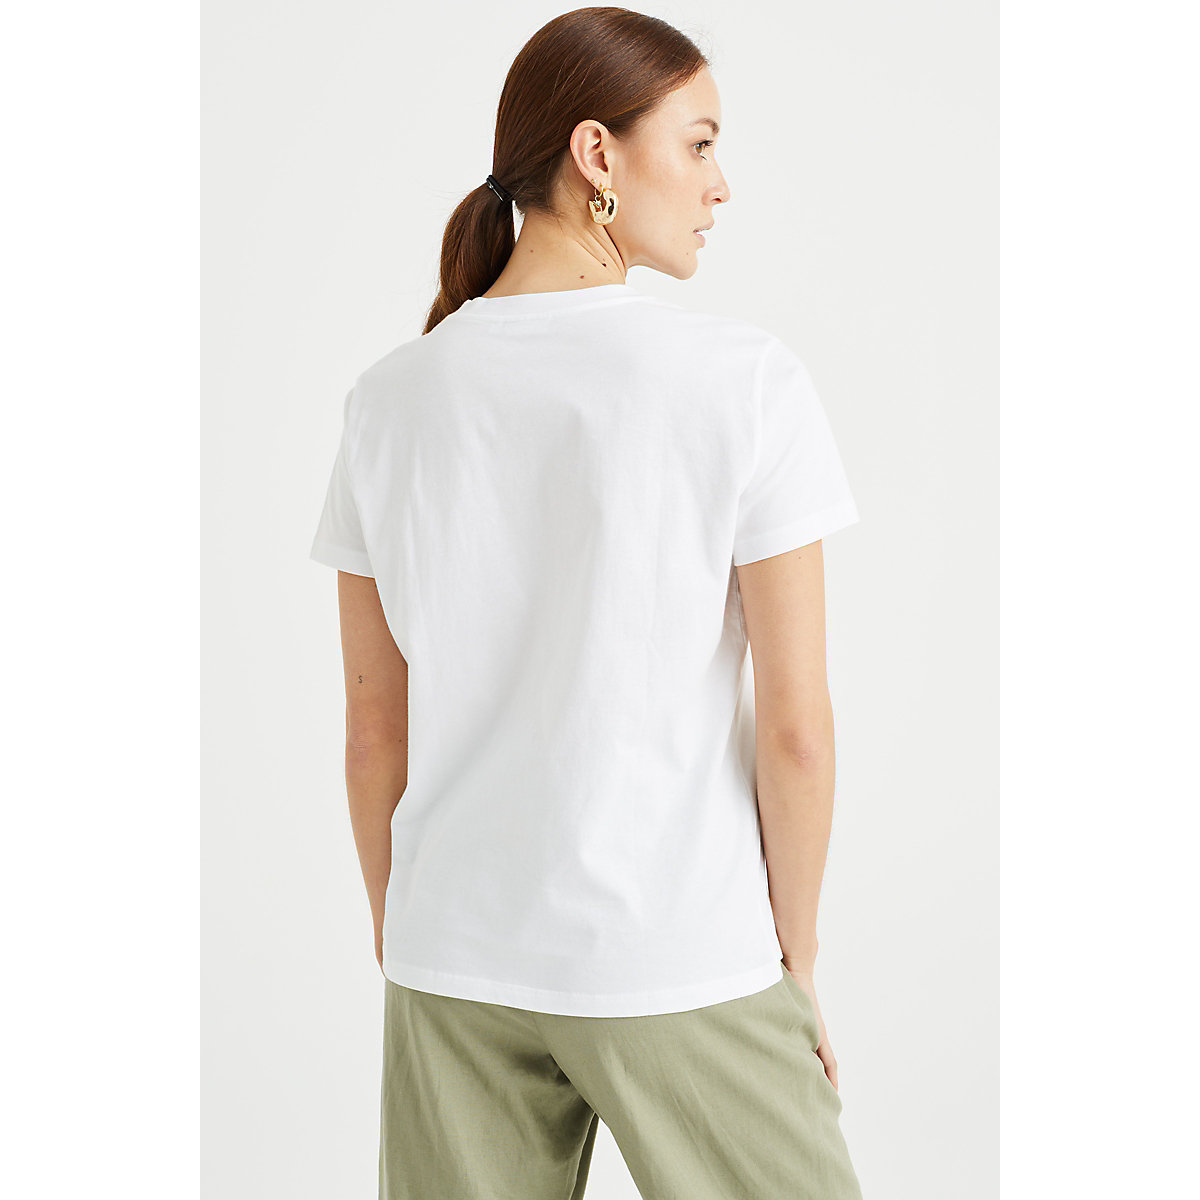 WE Fashion Damen-T-Shirt mit Stickerei Kurzarmhemden weiß